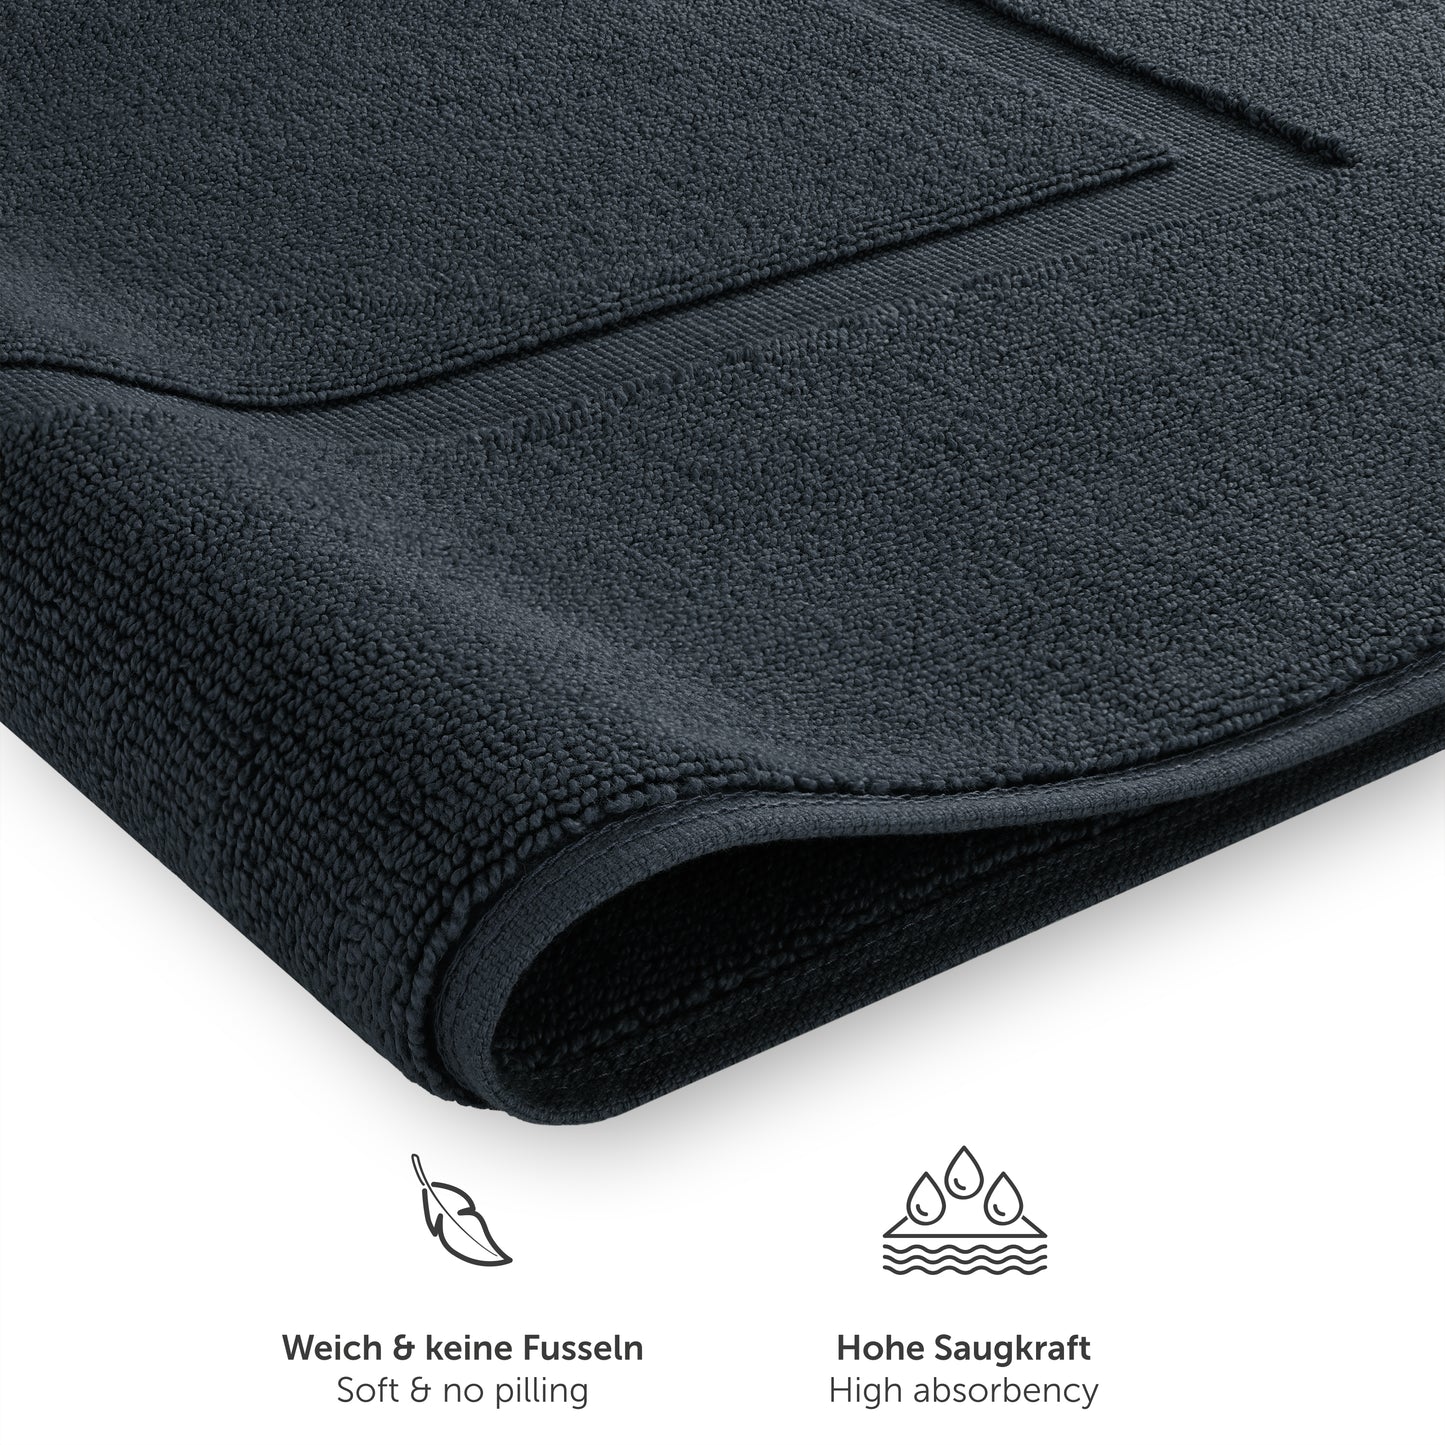 Detailansicht von dunkelblau Handtuch mit Text zu Weichheit und Saugfähigkeit.